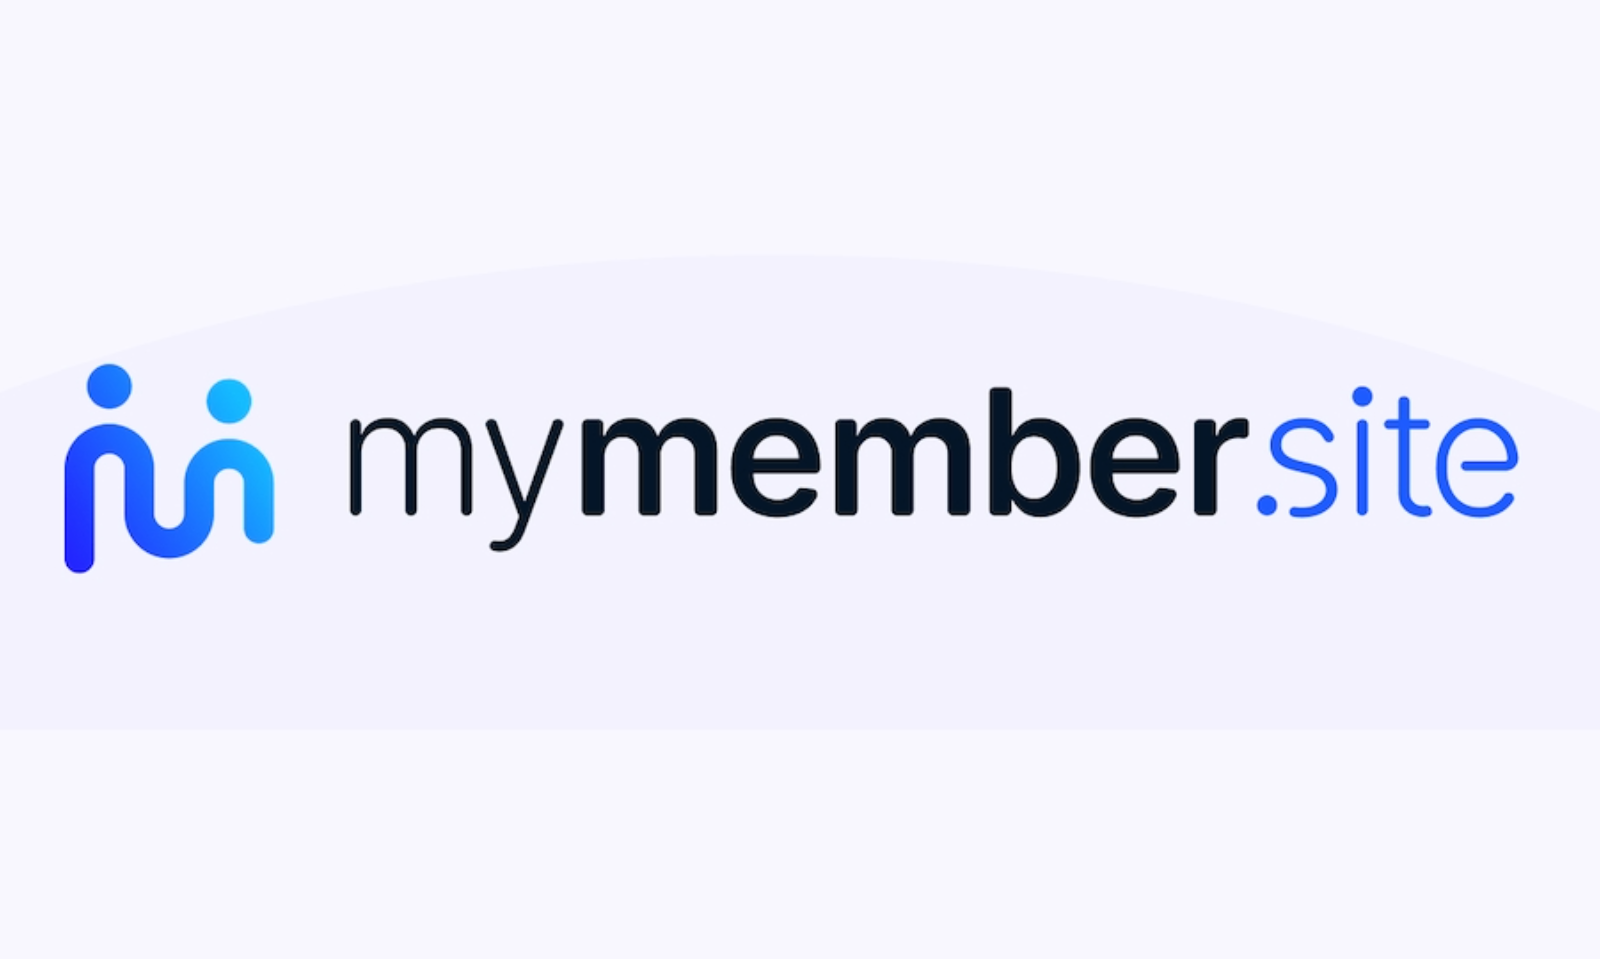 AdultMemberSites.com Rebrands As MyMember.site